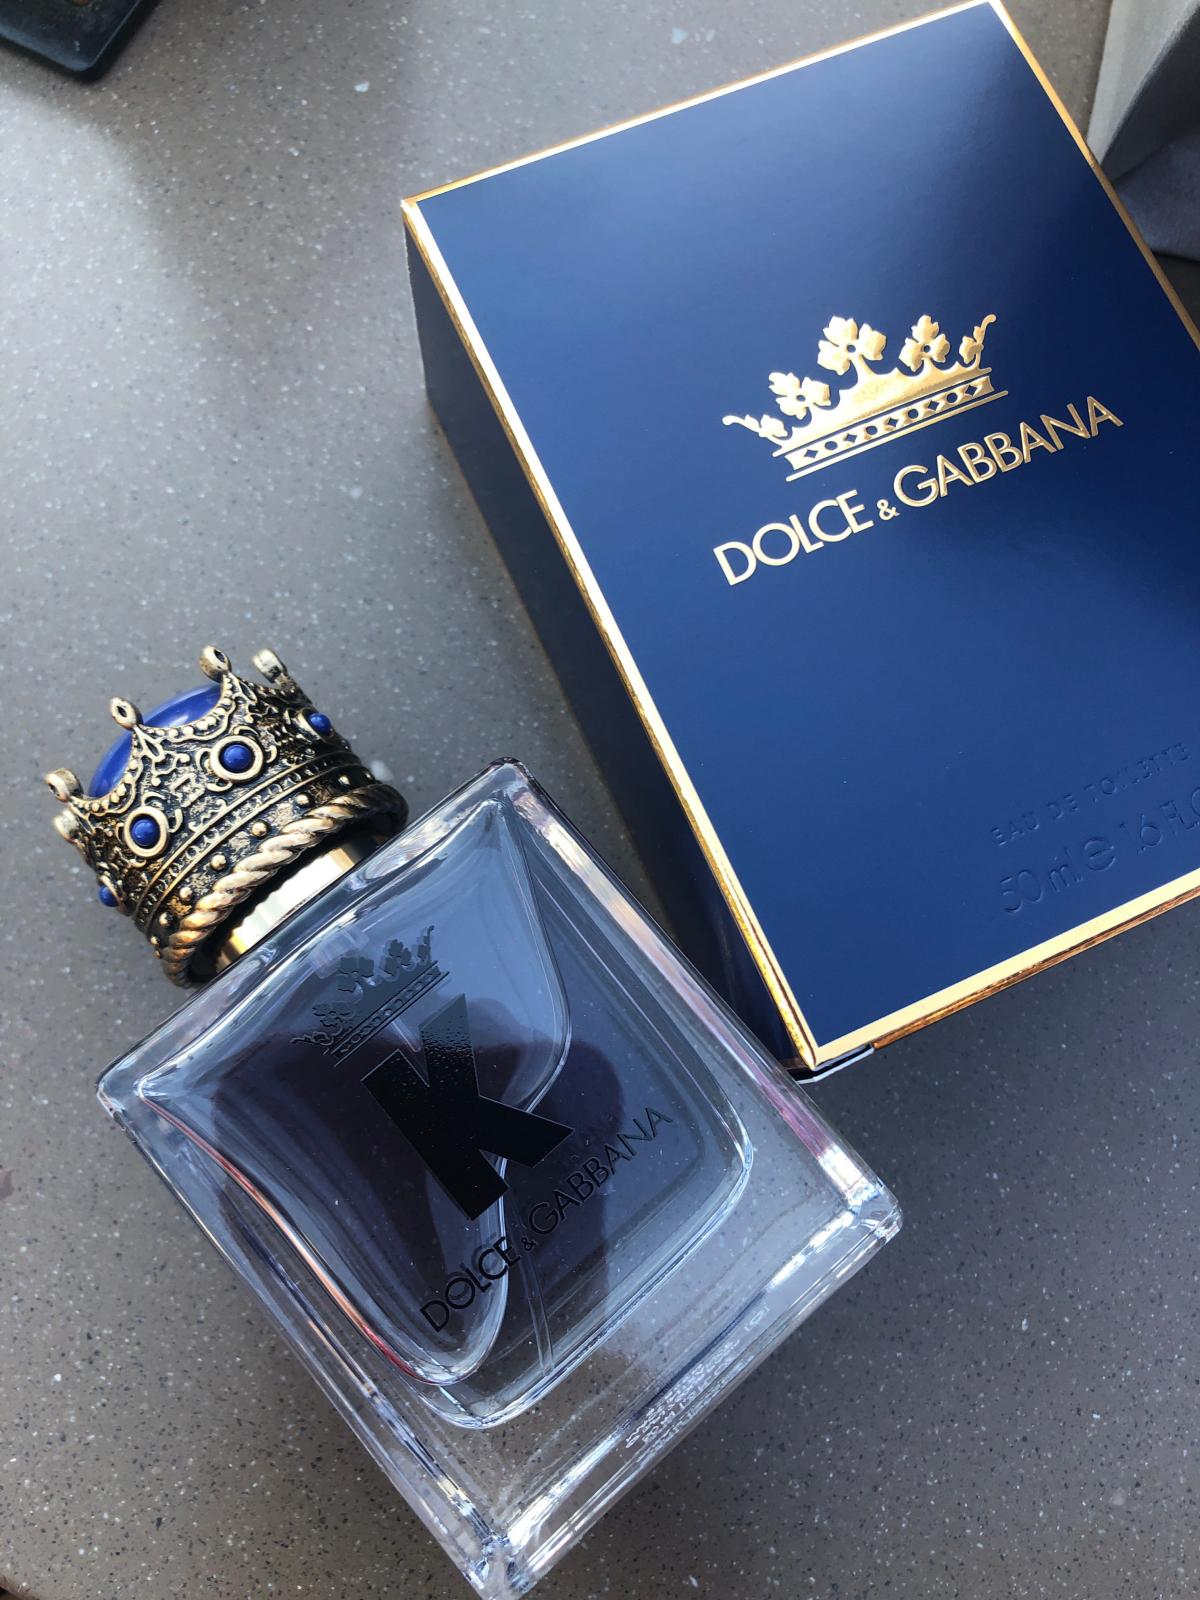 K by Dolce & Gabbana Dolce&Gabbana үнэртэн - a шинэ сүрчиг эрэгтэй 2019